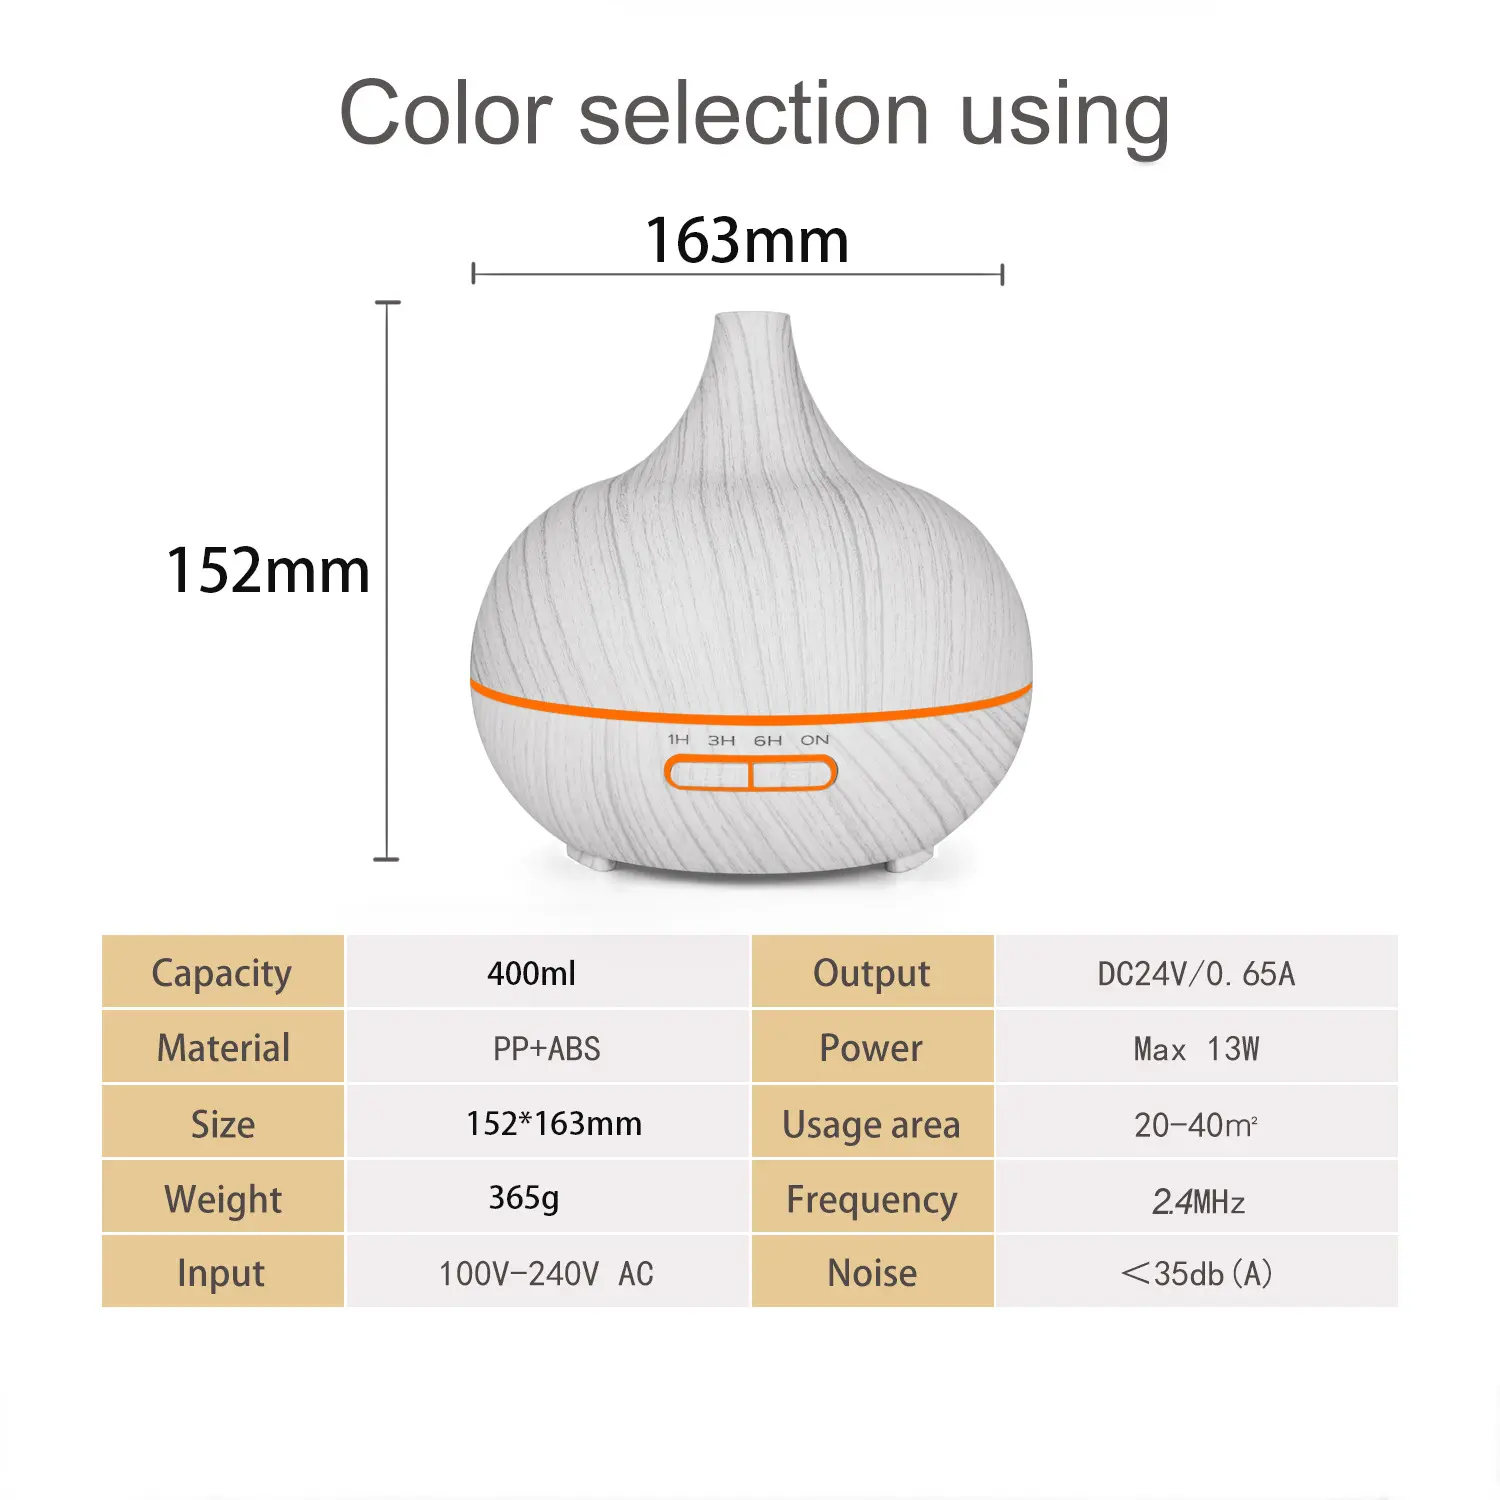 Párásító, aroma diffúzor készülék 400ml sötétbarna színben (YX-025-DARK-WOOD) ultrahangos